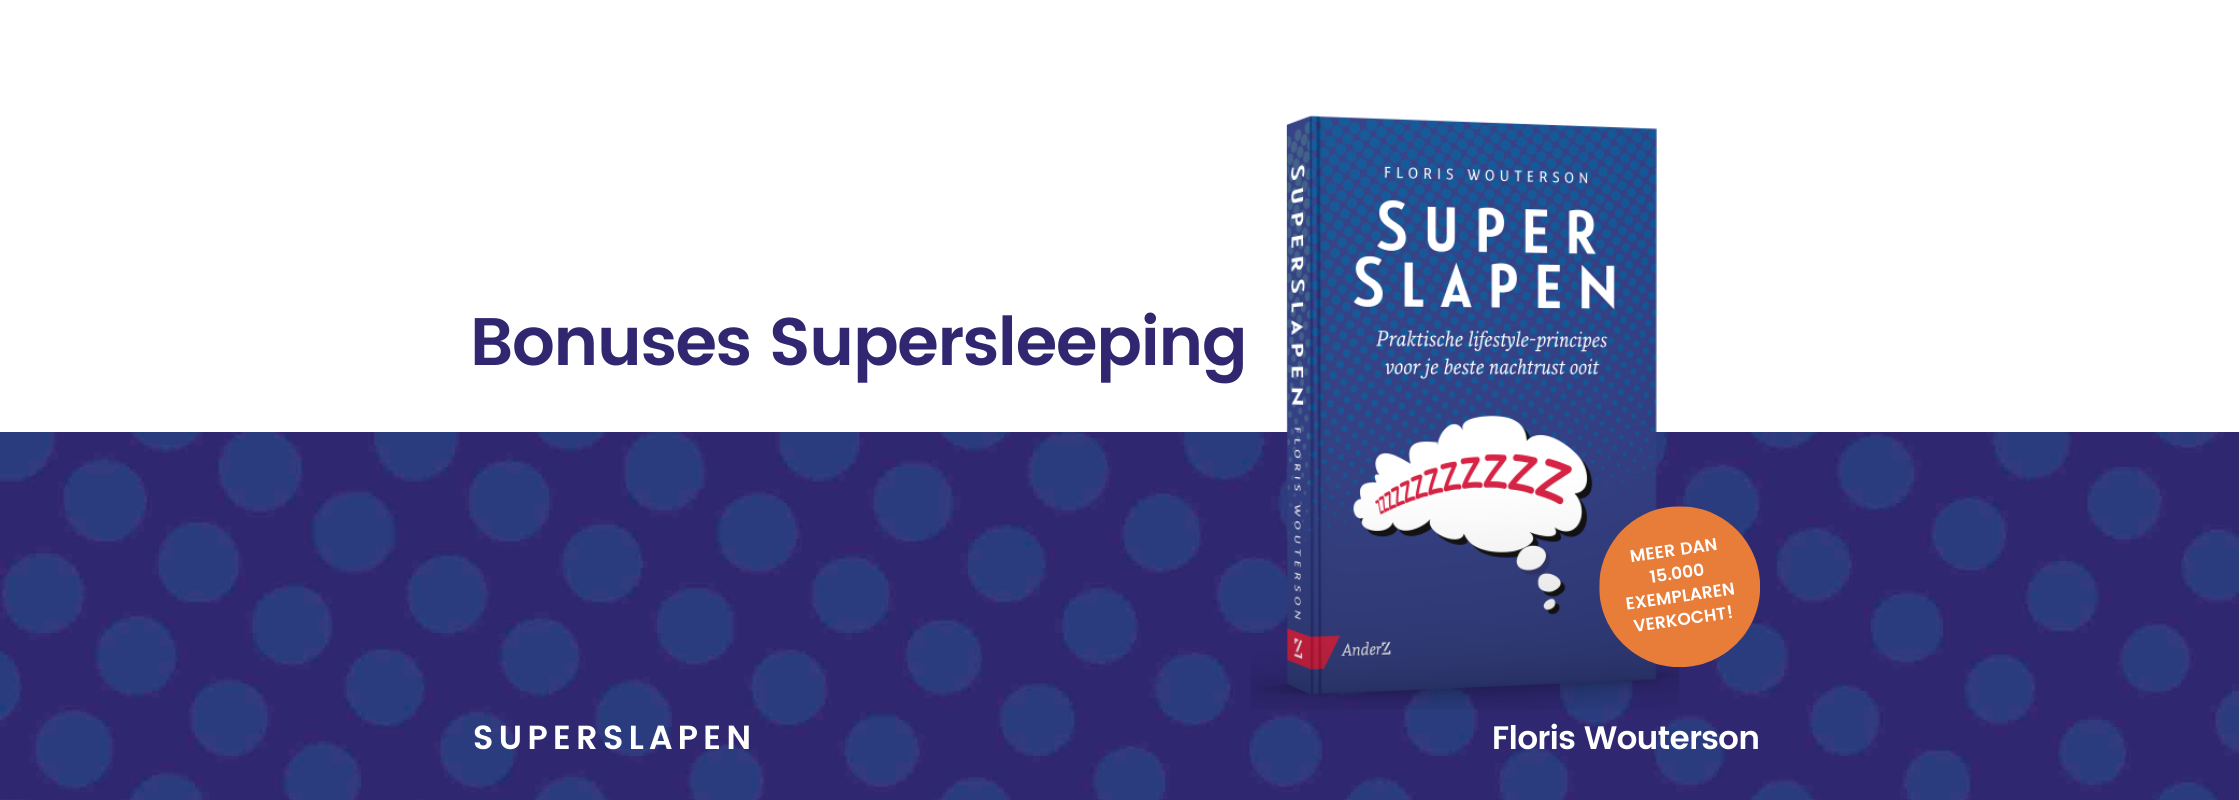 Bonuses Supersleeping